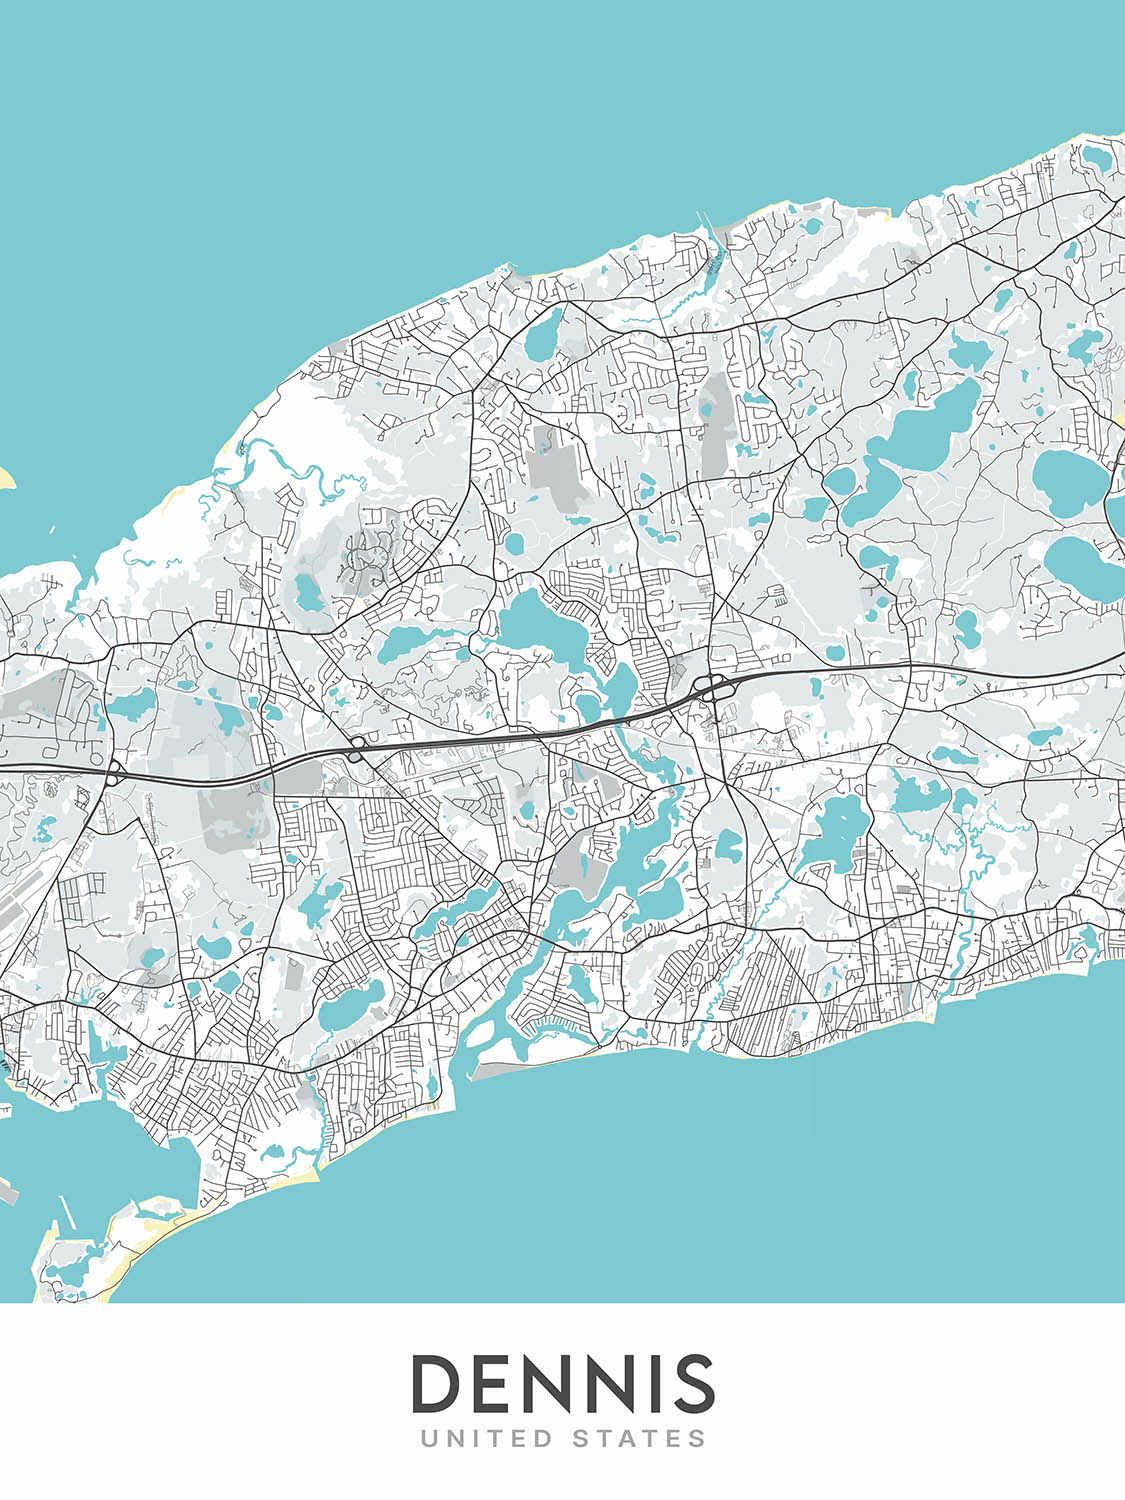 Modern City Map of Dennis, MA: Dennis Village, East Dennis, Dennis Port, West Dennis, South Dennis